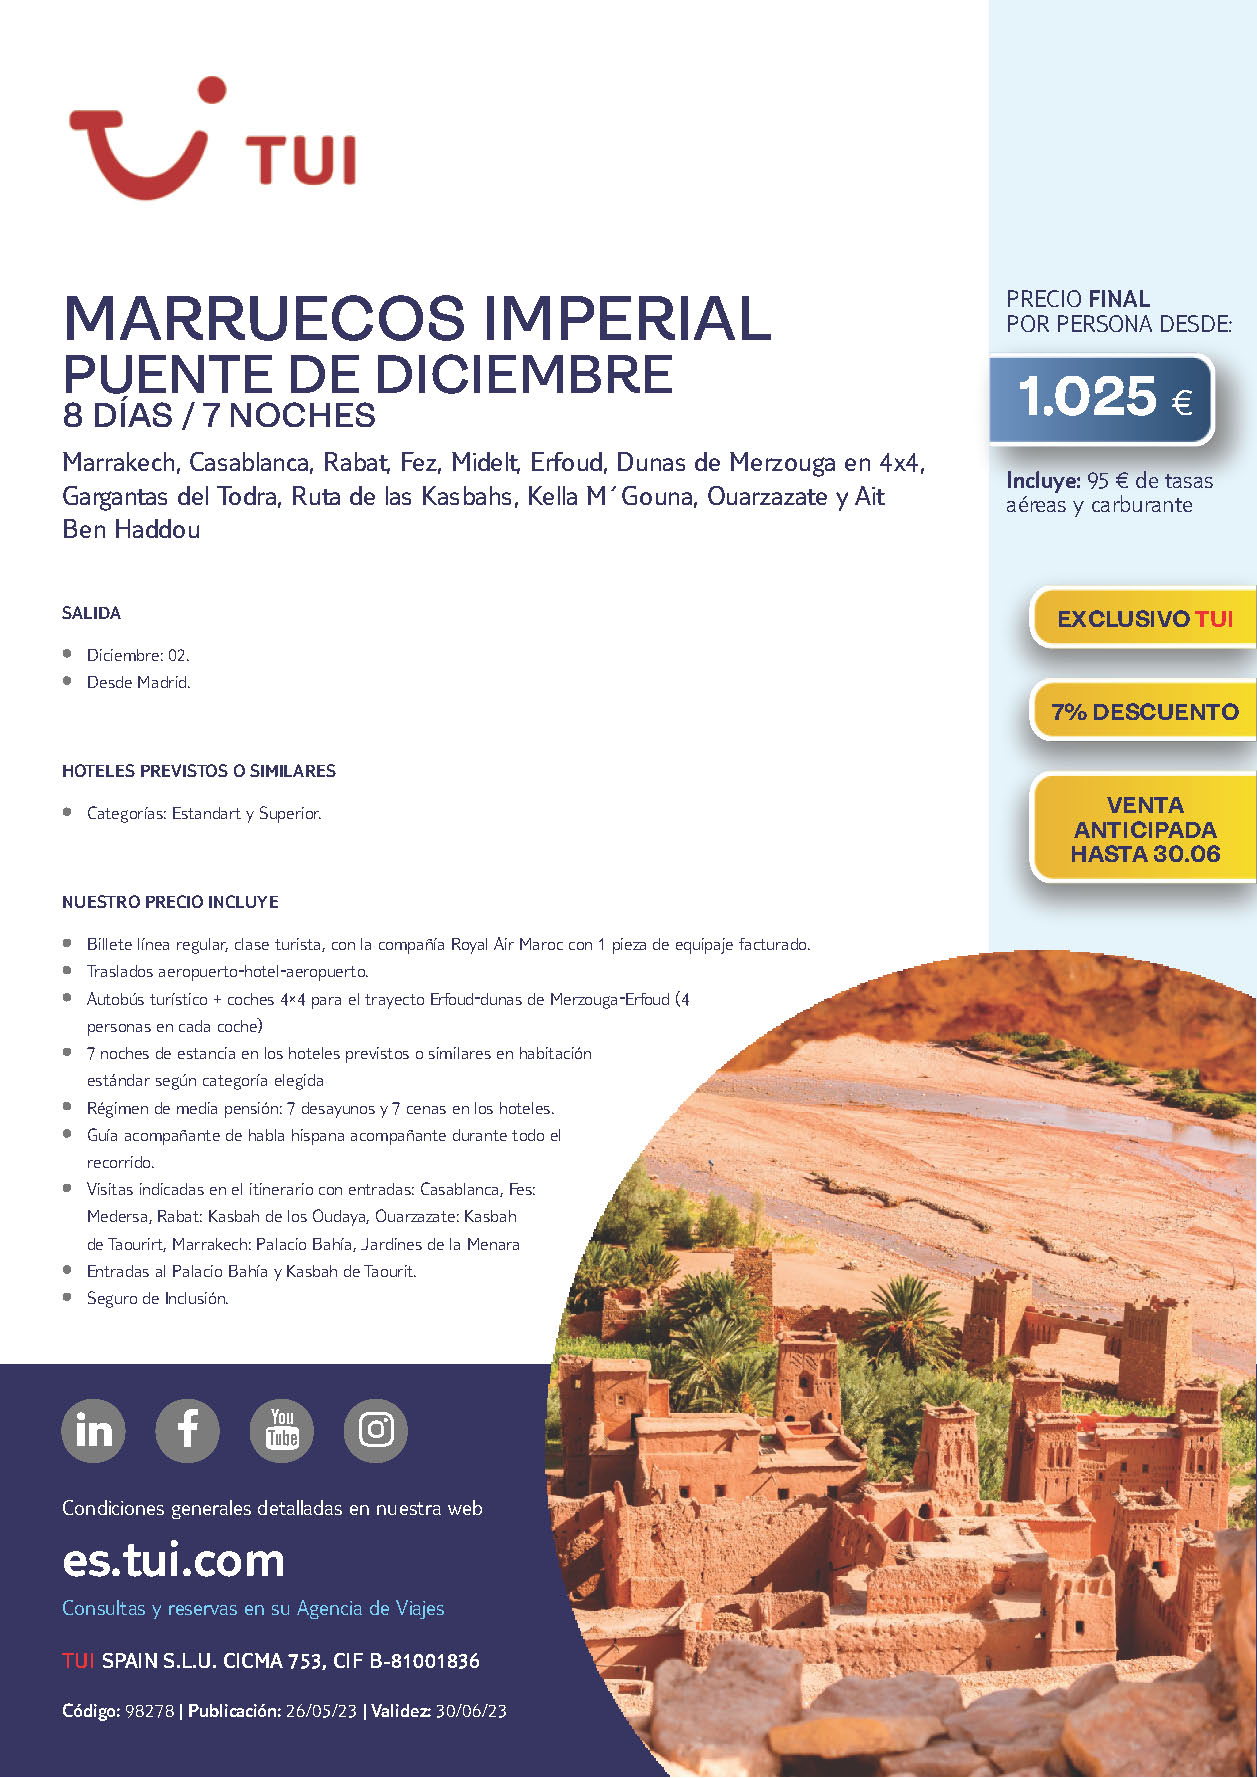 Oferta TUI Puente de Diciembre 2023 Marruecos Imperial 8 dias salidas 2 de diciembre vuelo directo desde Madrid vuelos Royal Air Maroc